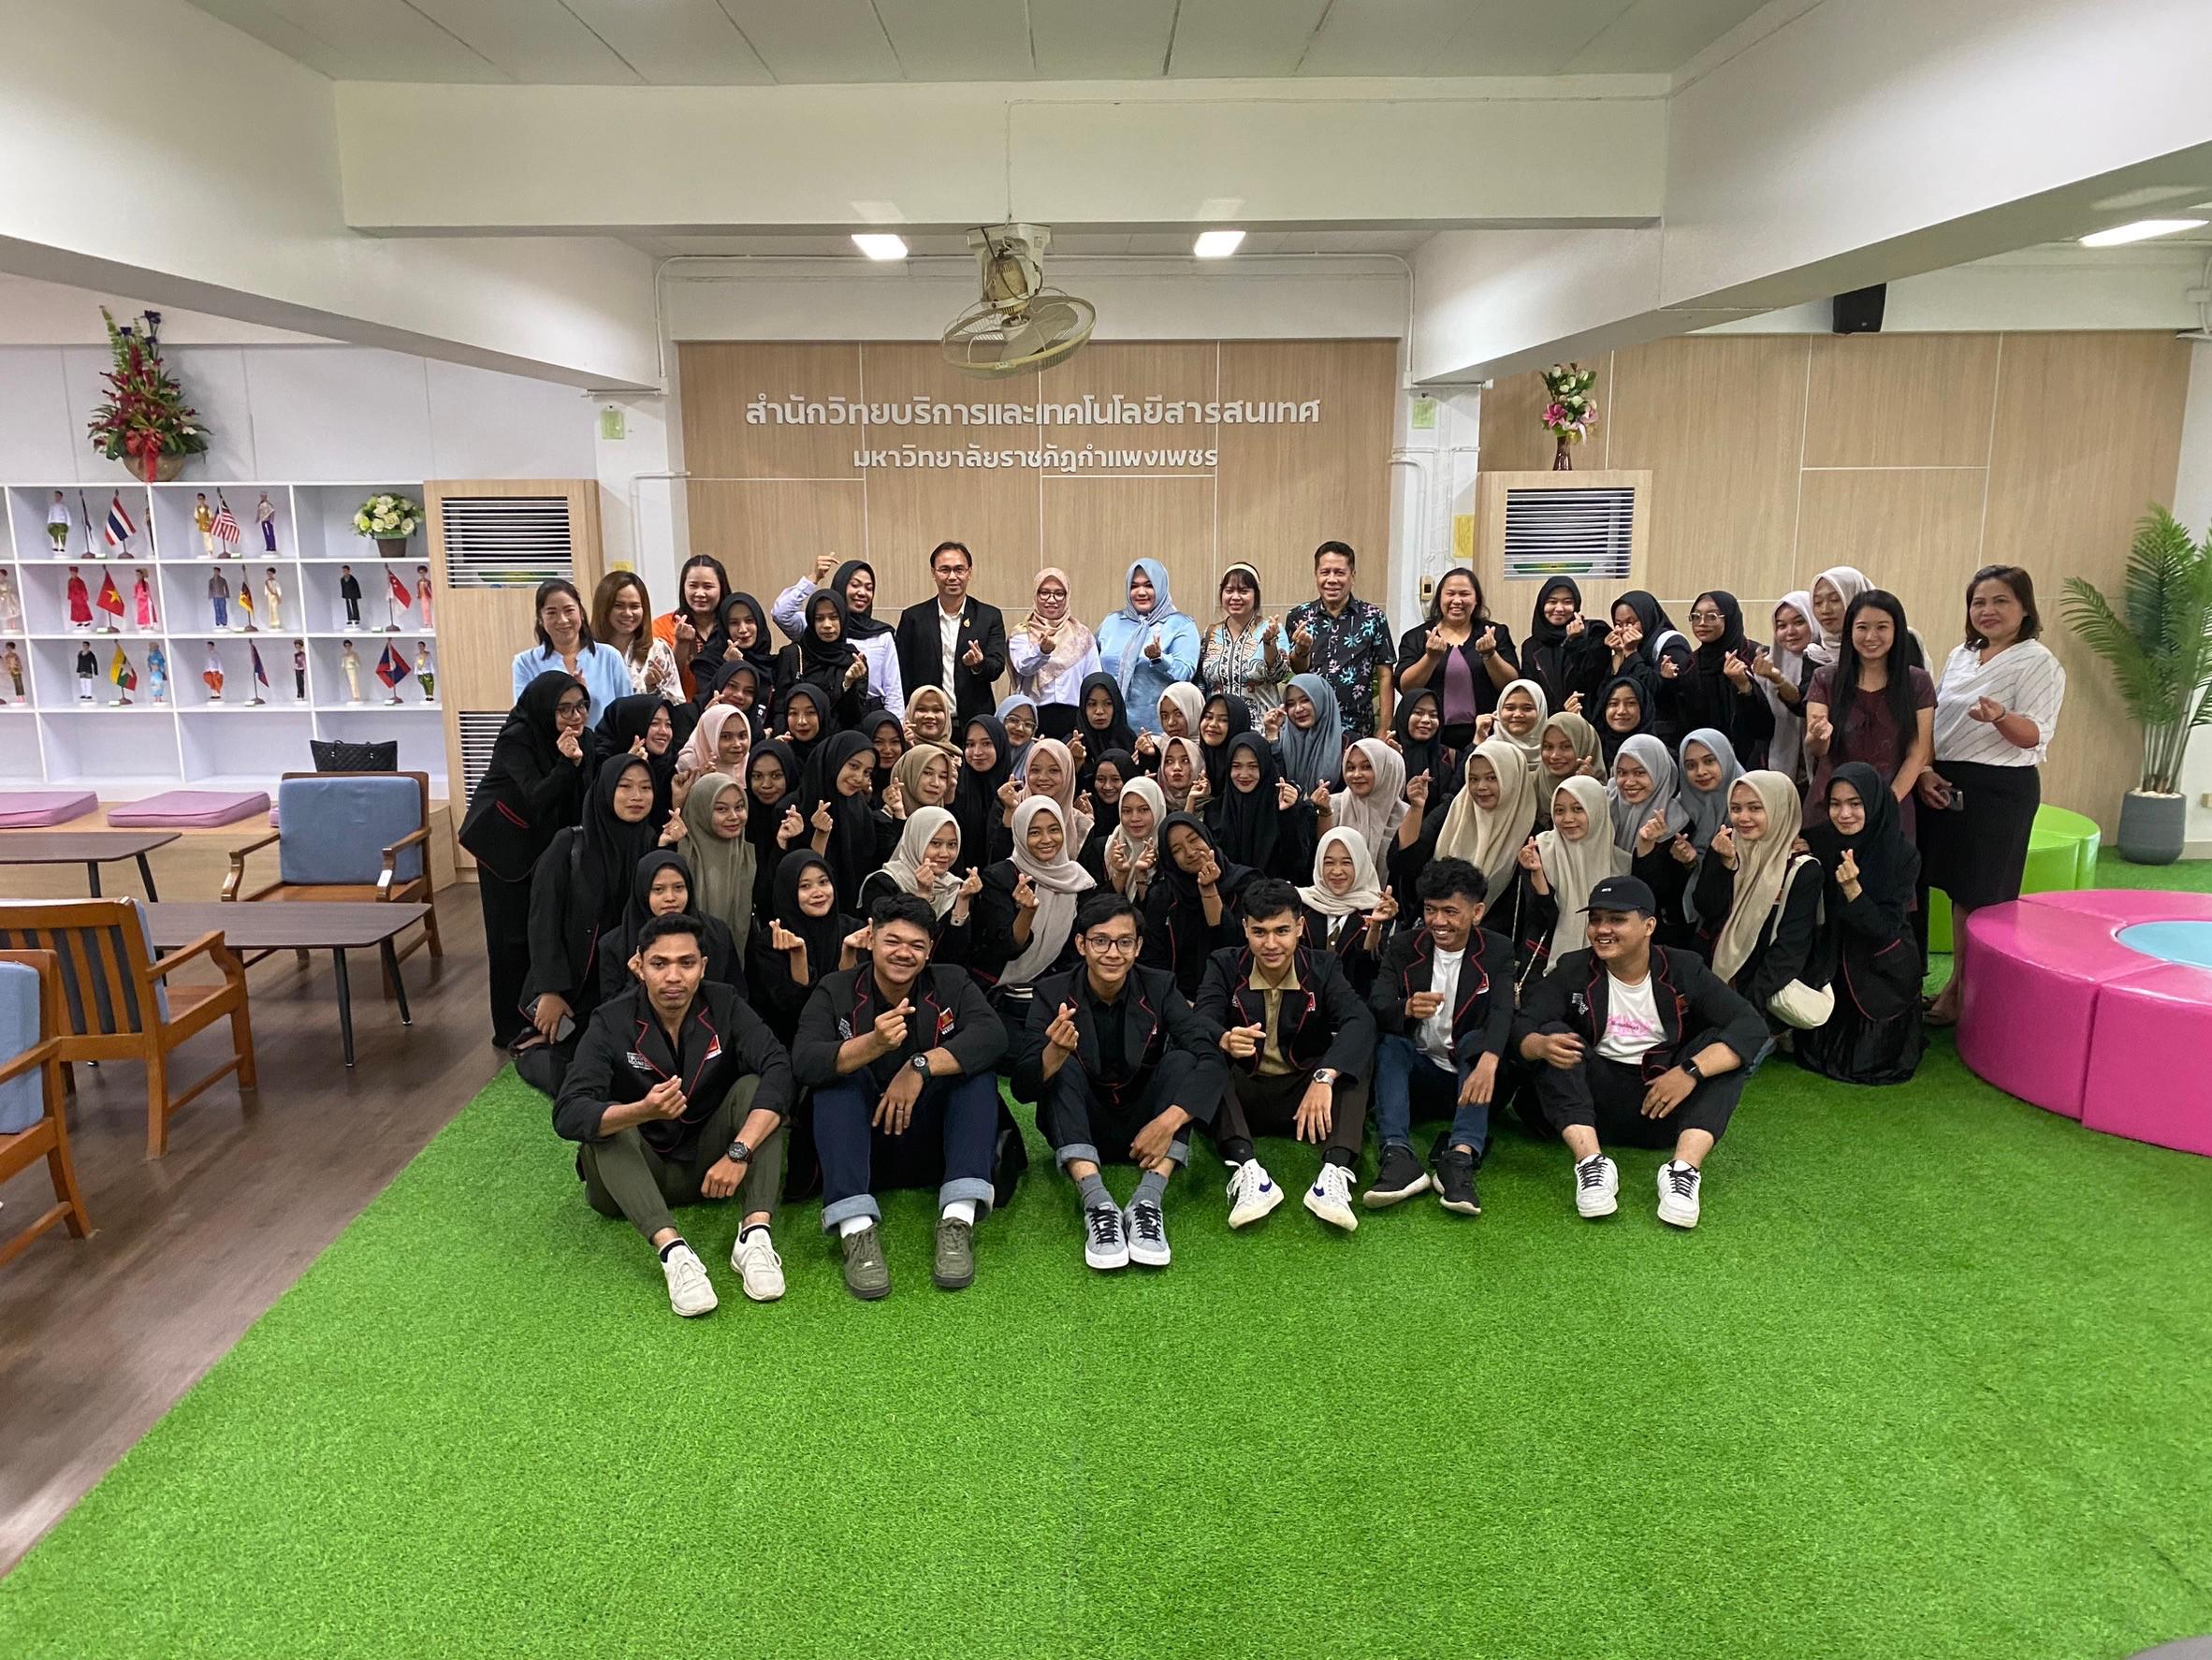 16. ต้อนรับคณะผู้บริหารและนักศึกษาจากมหาวิทยาลัย Ubudiyah University Indonesia ประเทศสาธารณรัฐอินโดนีเซีย